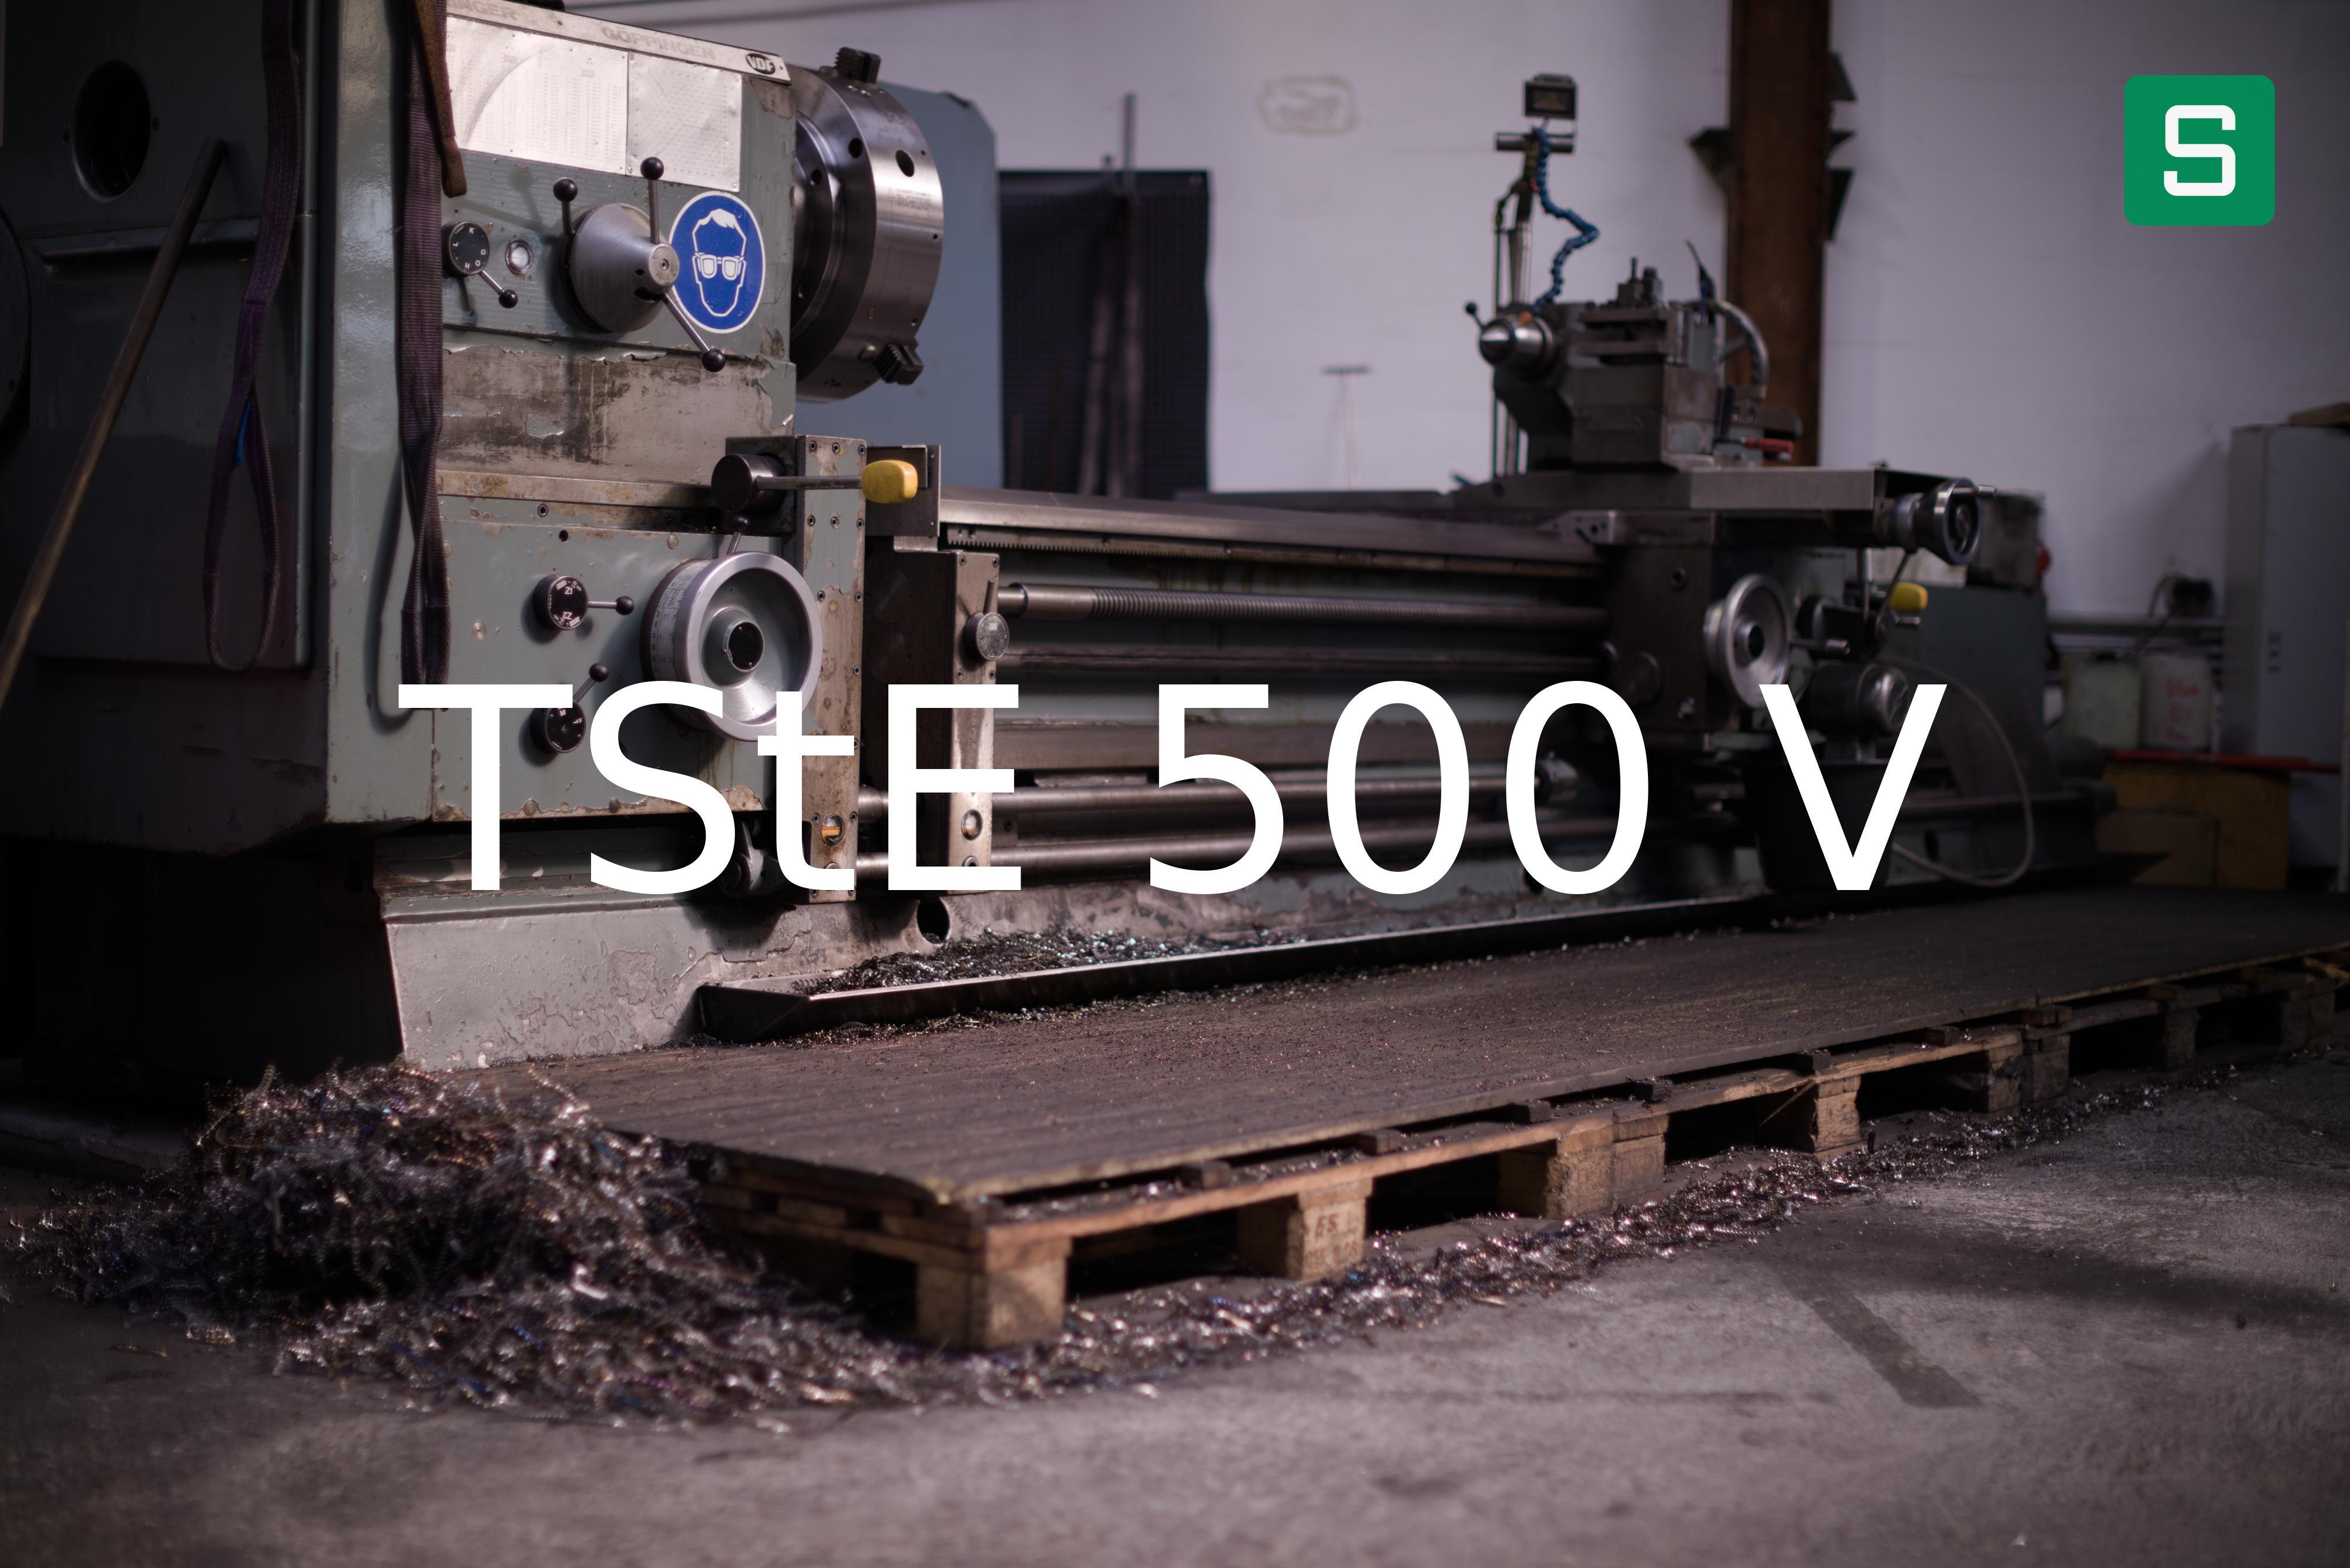 Steel Material: TStE 500 V